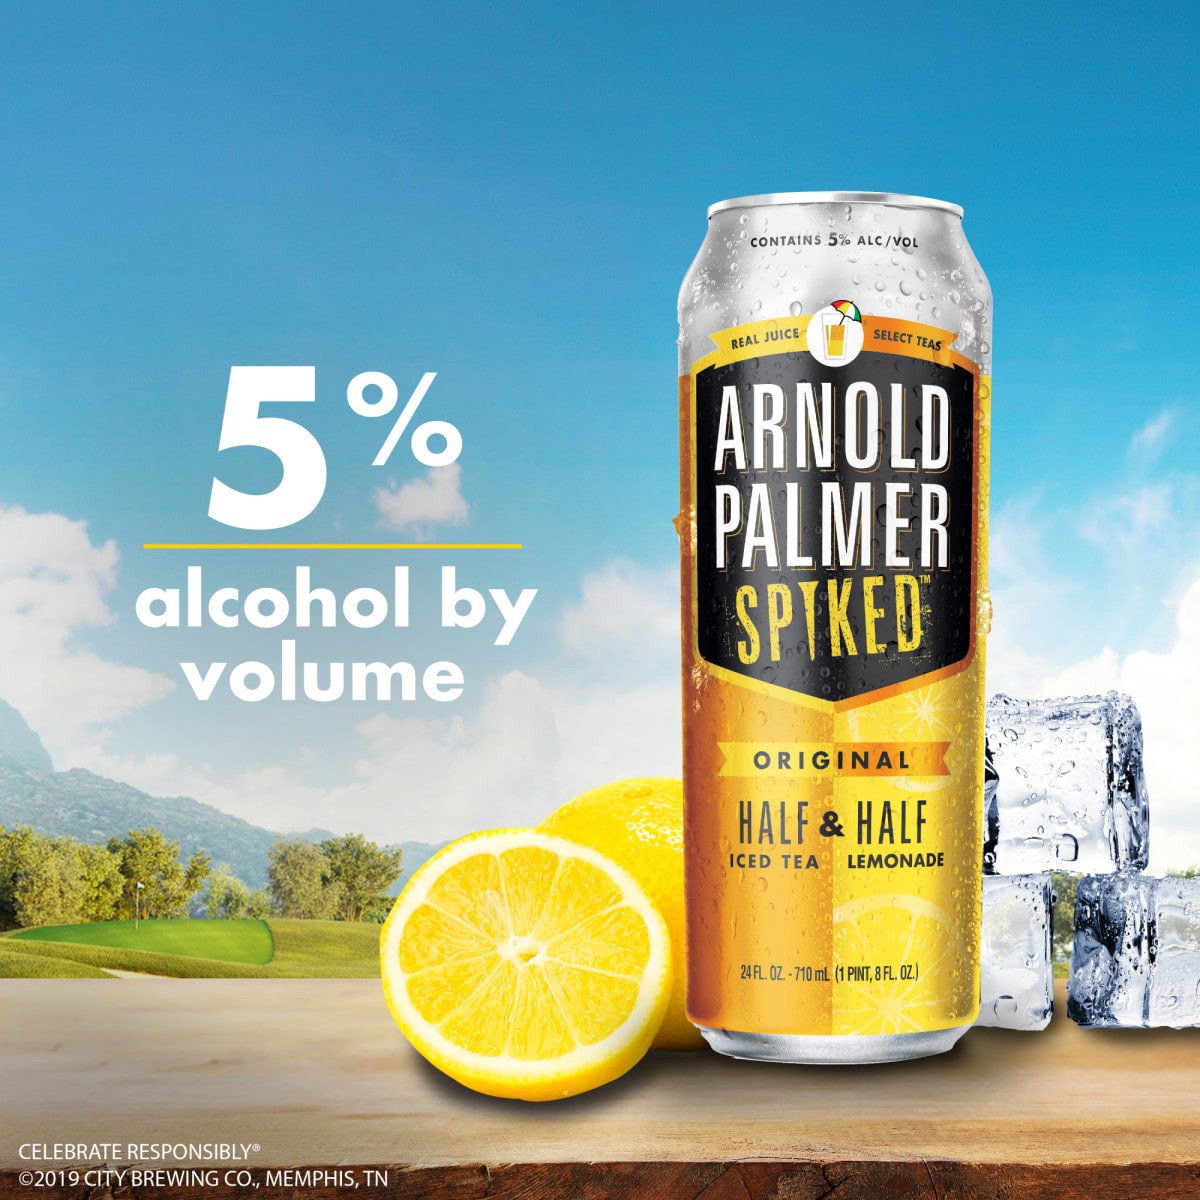 slide 24 of 29, Arnold Palmer Spiked Half & Half Original Arnold Palmer Spiked Original Half & Half Iced Tea Lemonade, 6 Pack, 12 fl oz Cans, 5% ABV, 72 fl oz